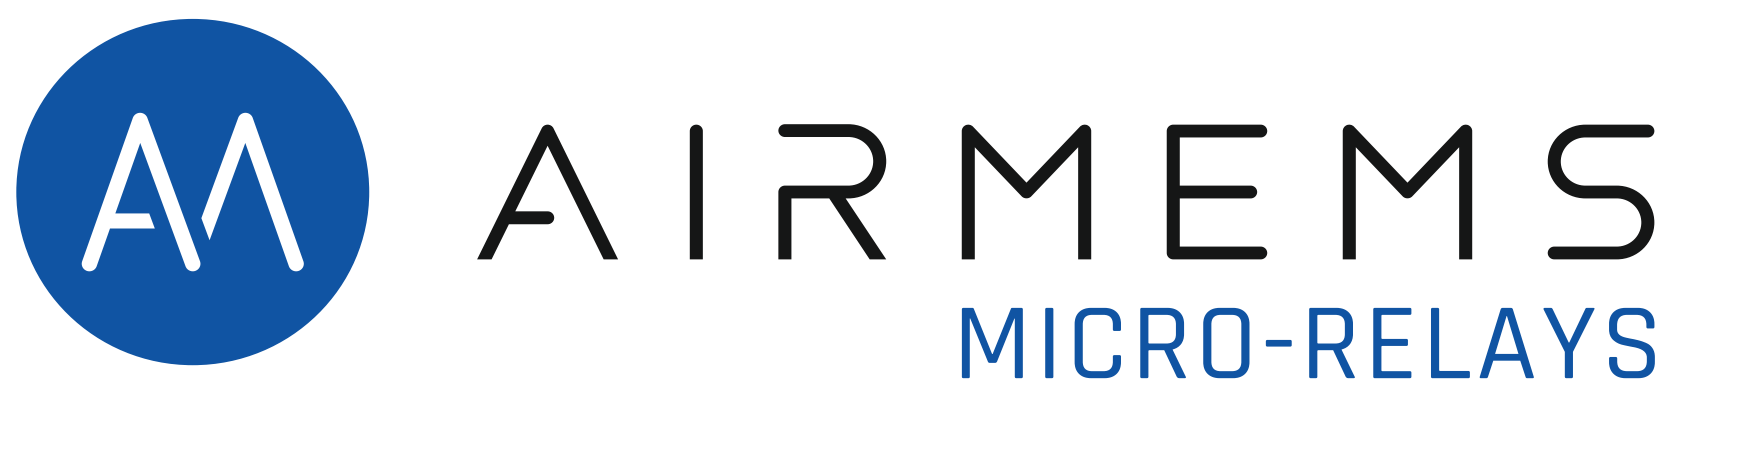 Logo adherent AIRMEMS